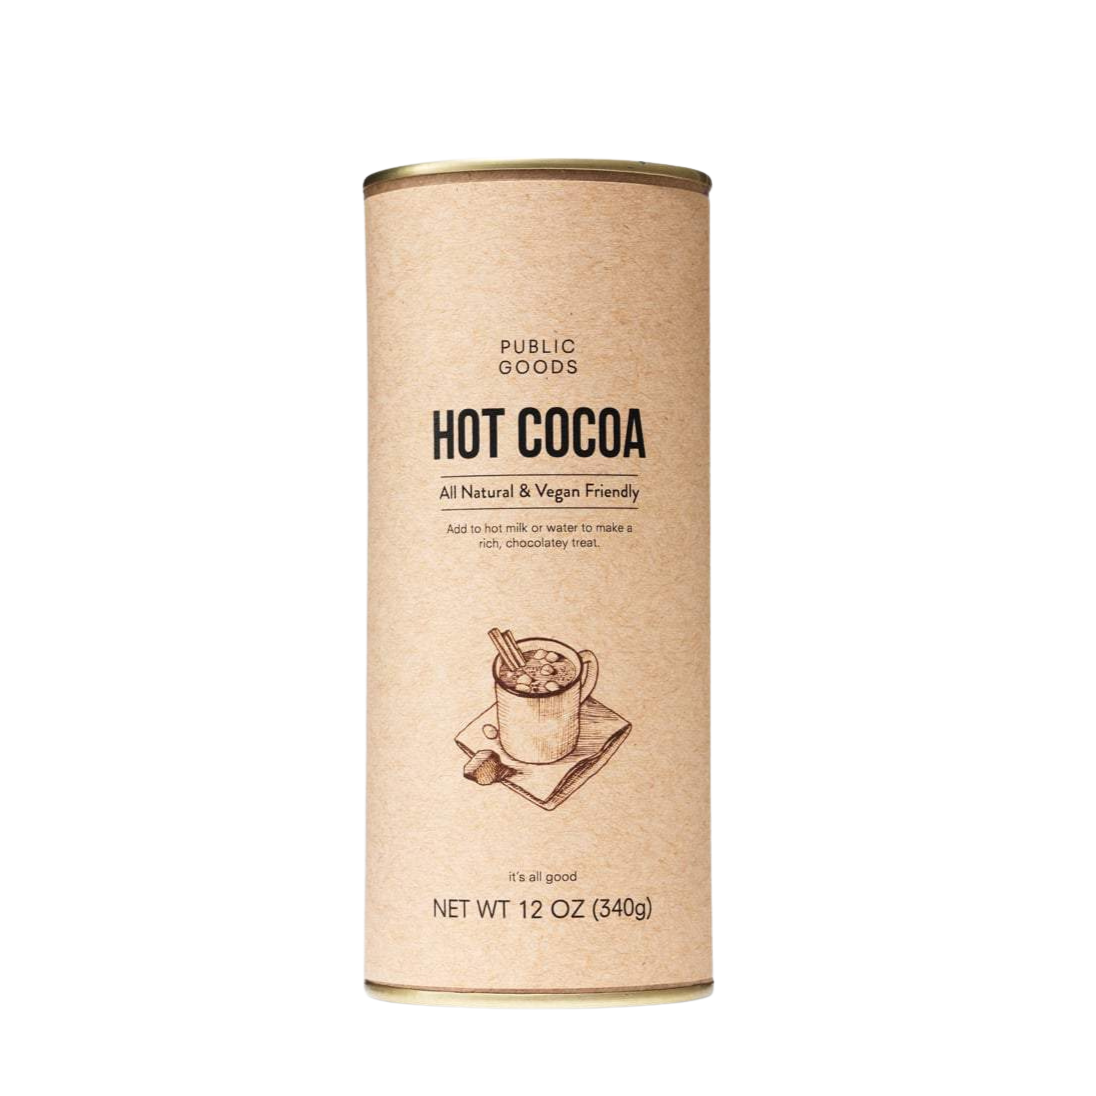 All Natural Hot Cocoa Mix (Vegan)